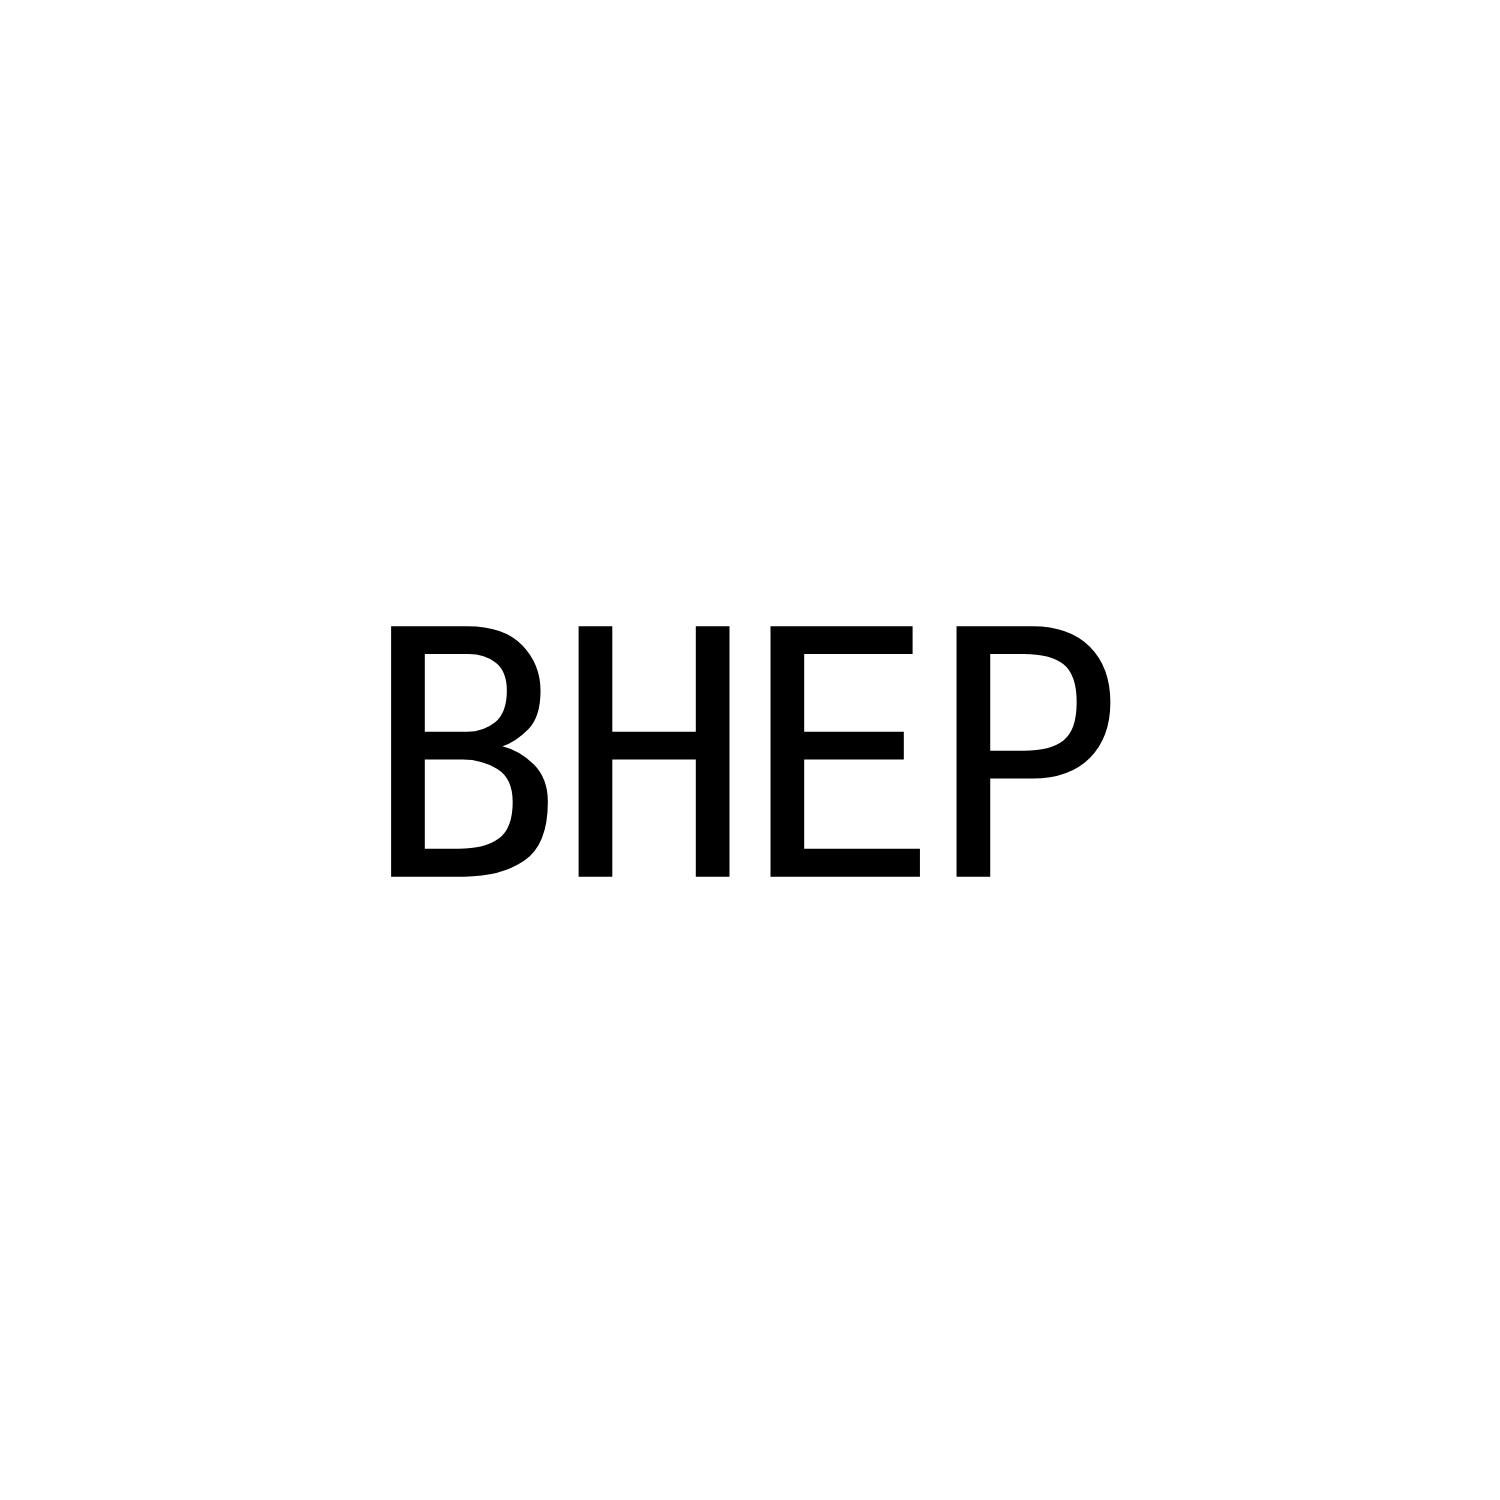 BHEP